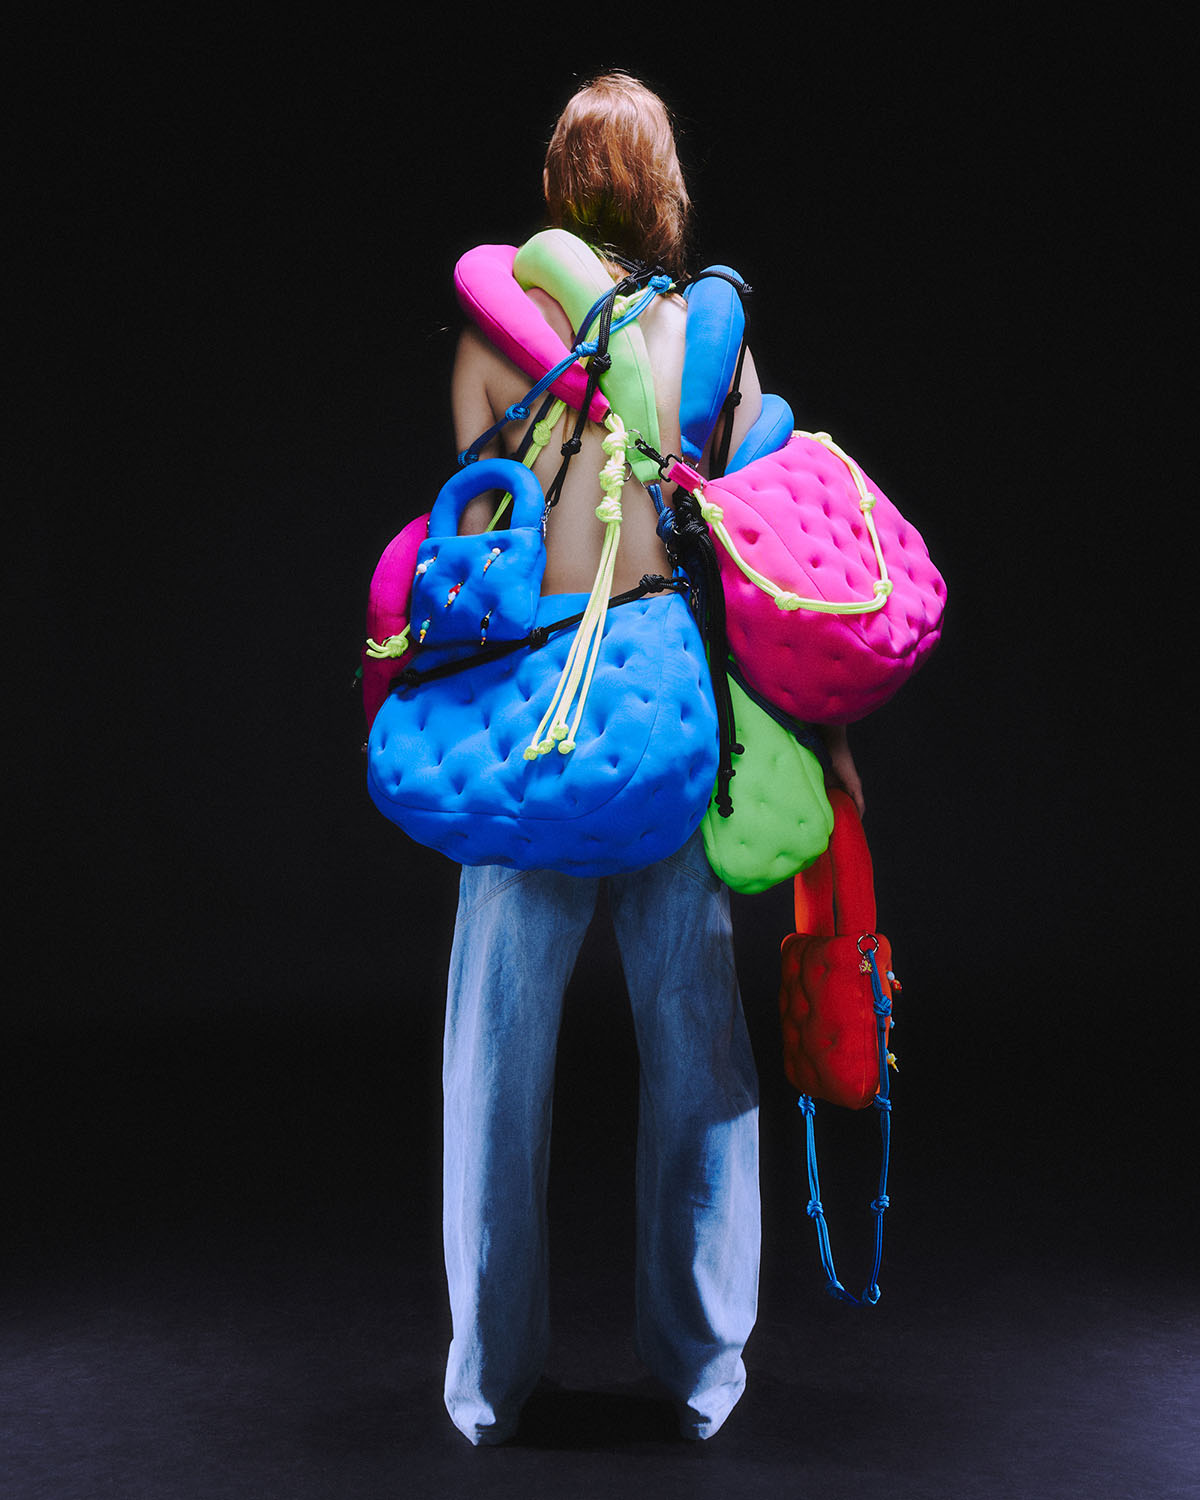 Marshalls, Bags, Mini Backpack